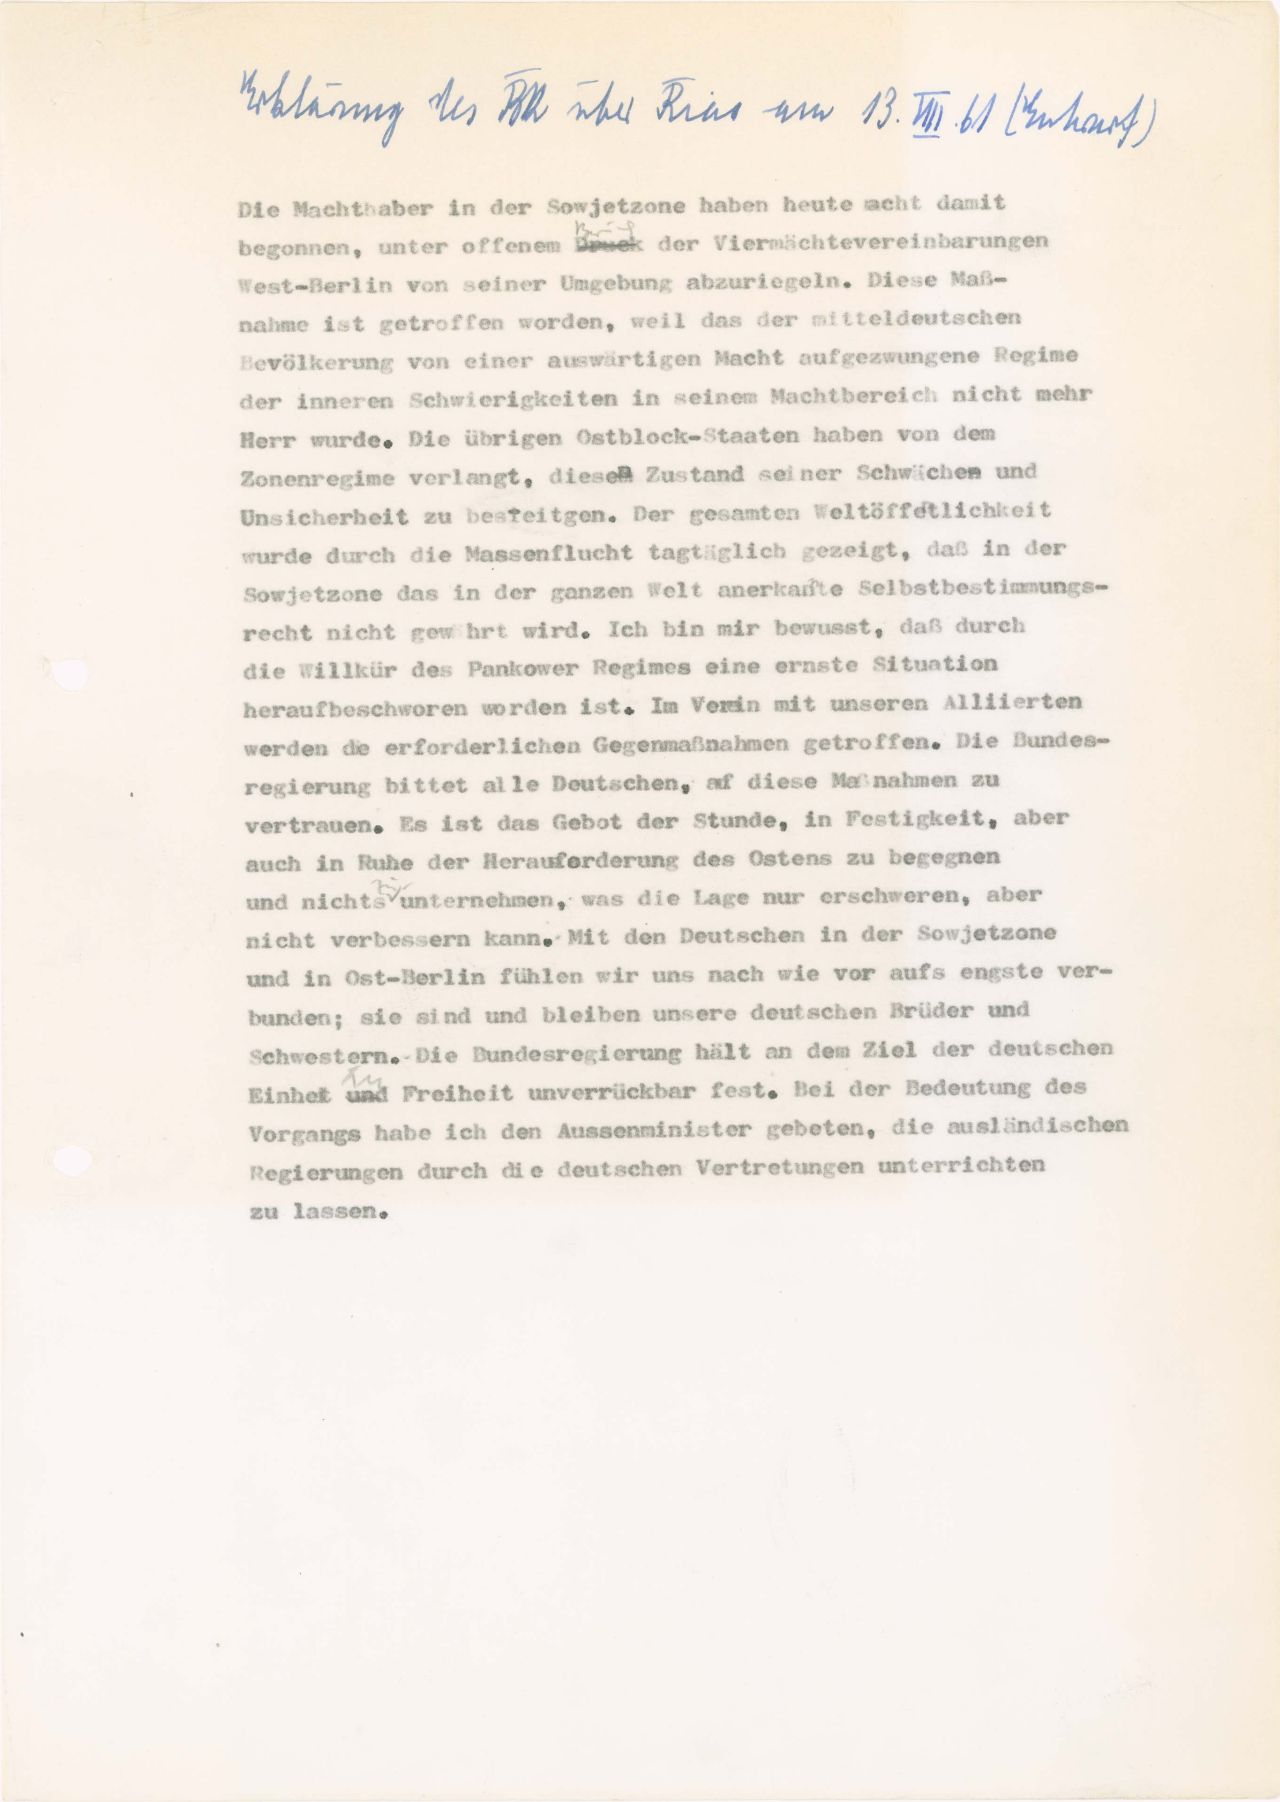 Entwurf für eine Erklärung Konrad Adenauers zum Bau der Berliner Mauer am 13. August 1961.